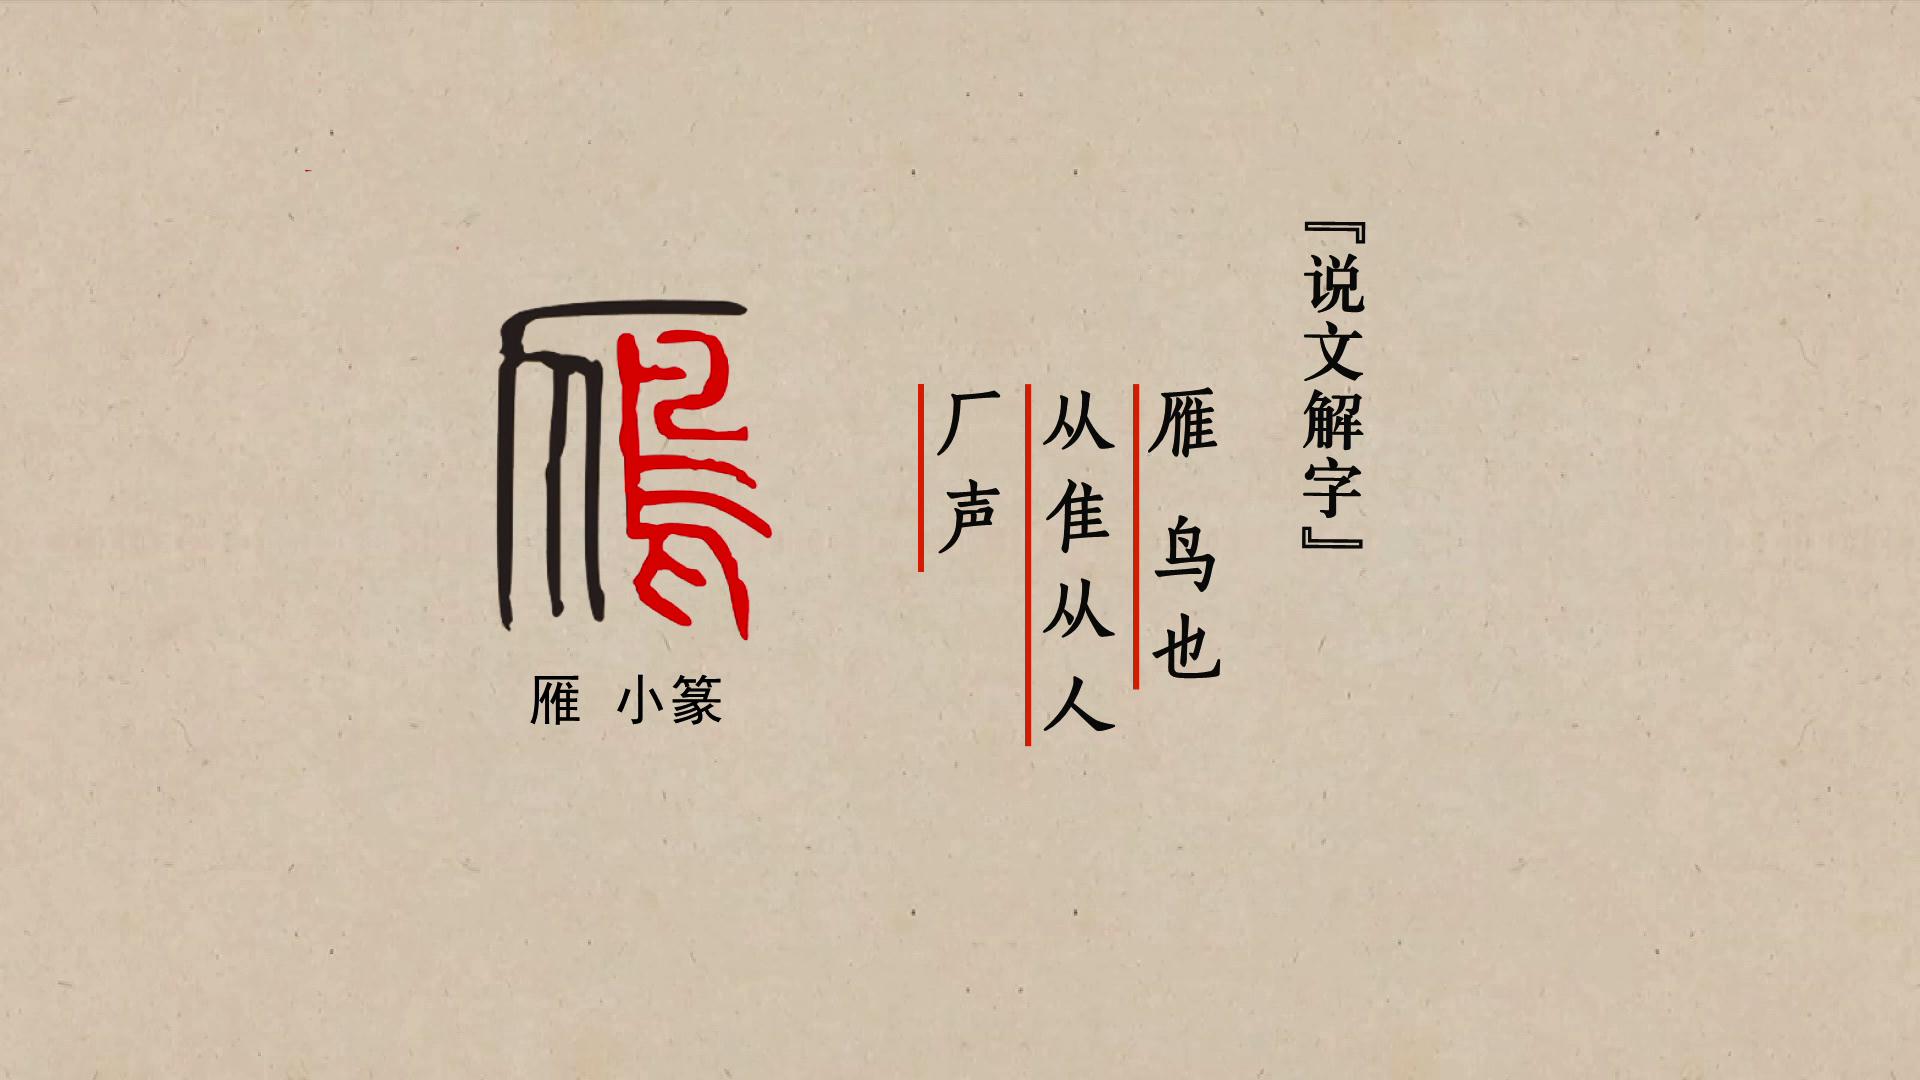 金文中的雁字左上部是人,右边是表示一只鸟的象形,雁的小篆字形发生了